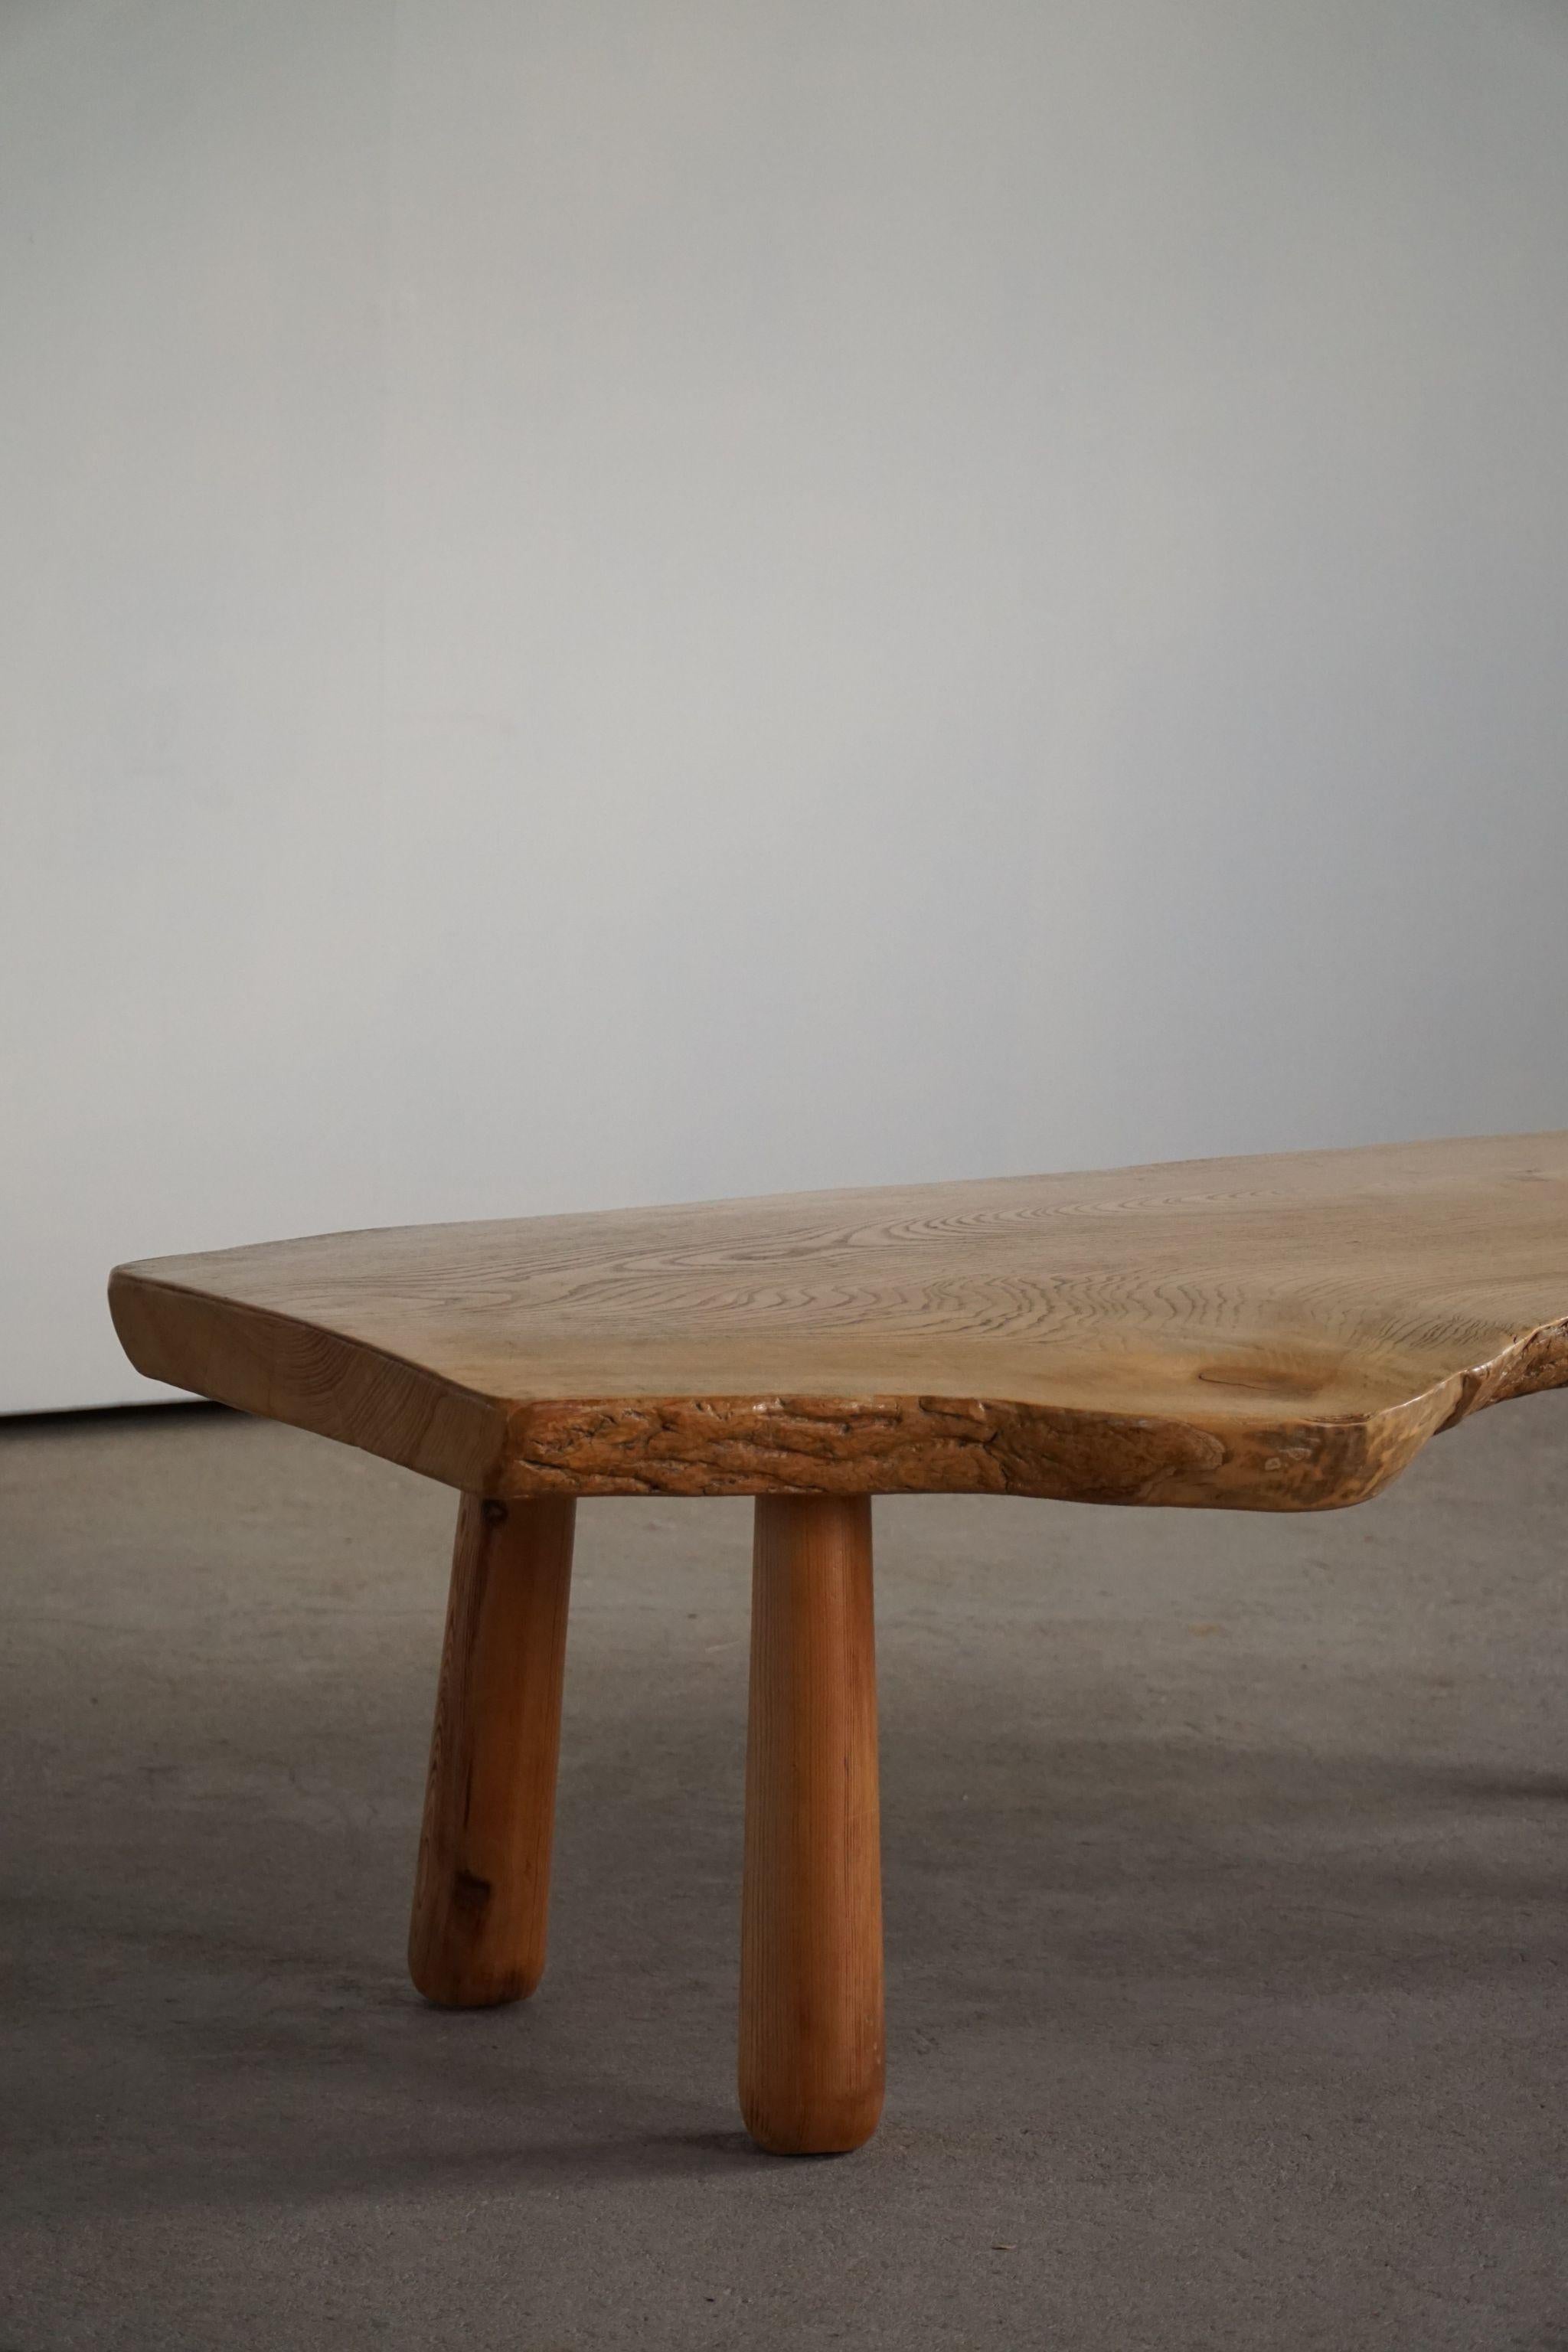 20th Century, Organic Table in Pine with Club Legs, Wabi Sabi, Swedish Modern 7